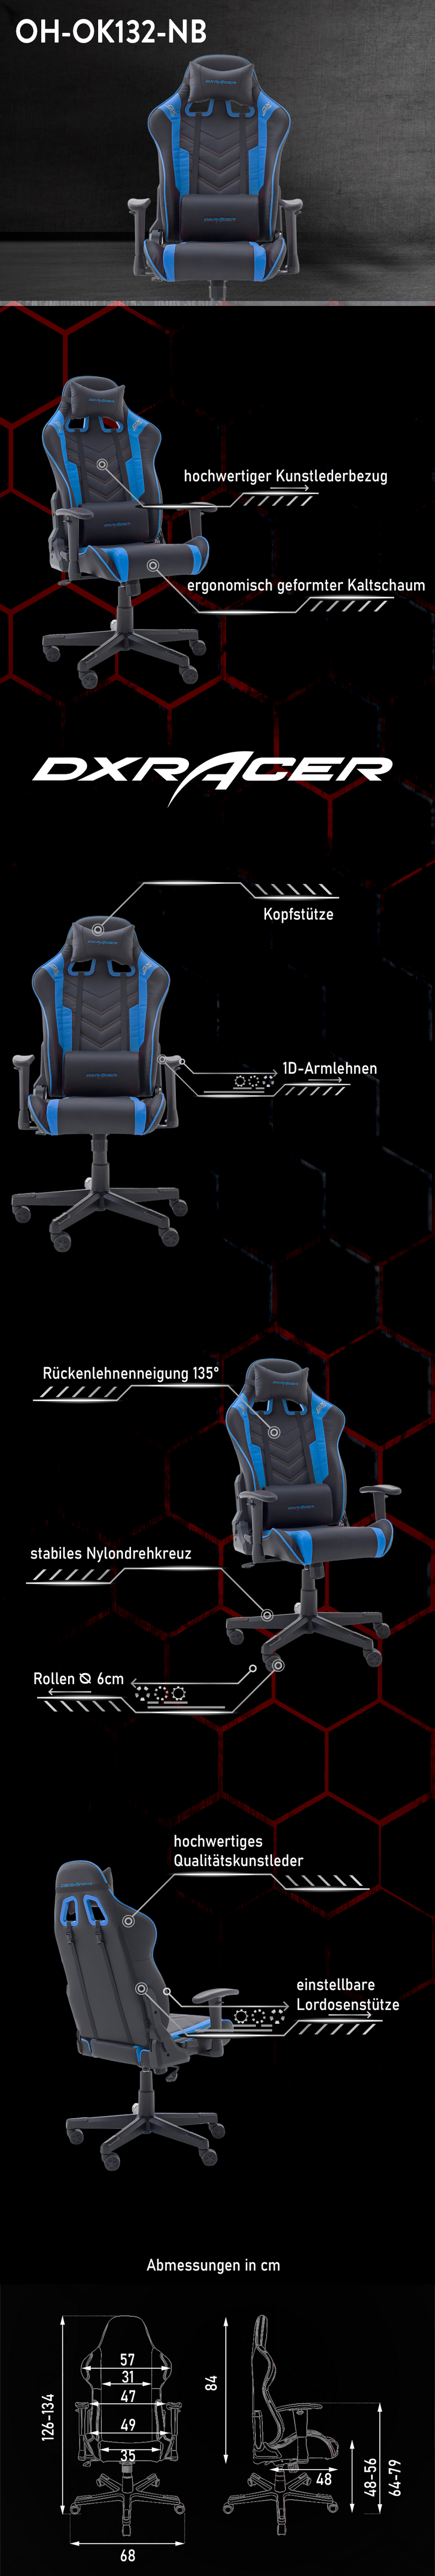 Beschreibung OK132 Gaming Stuhl